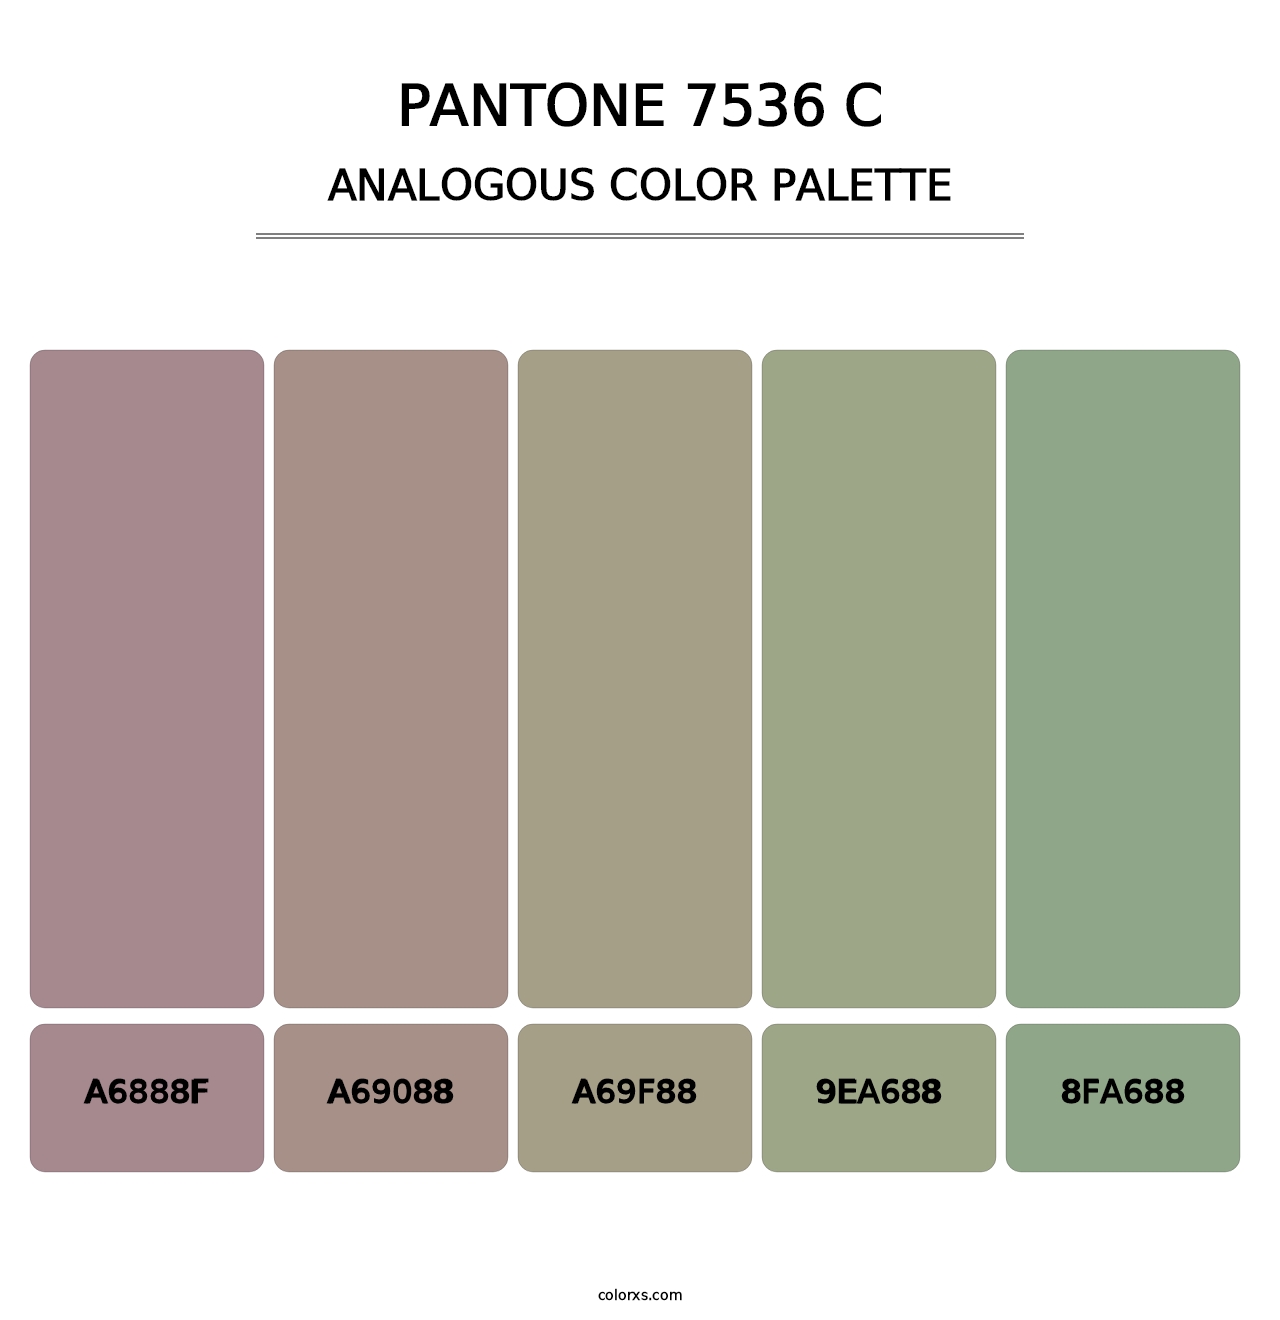 PANTONE 7536 C - Analogous Color Palette